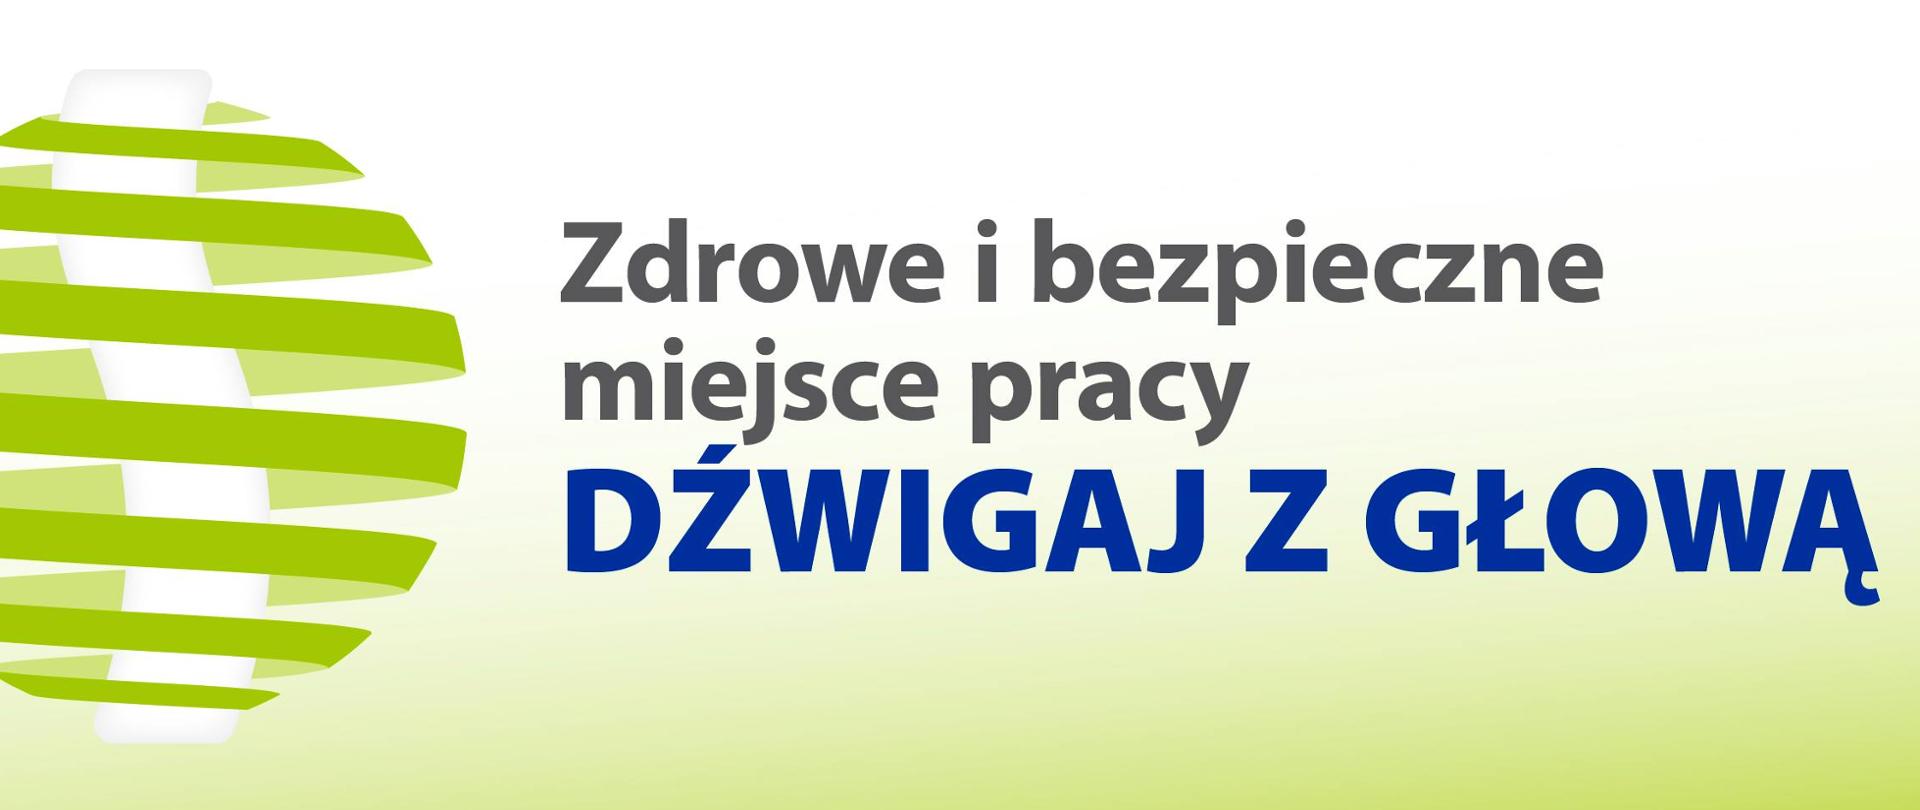 dzwigaj_z_glowa